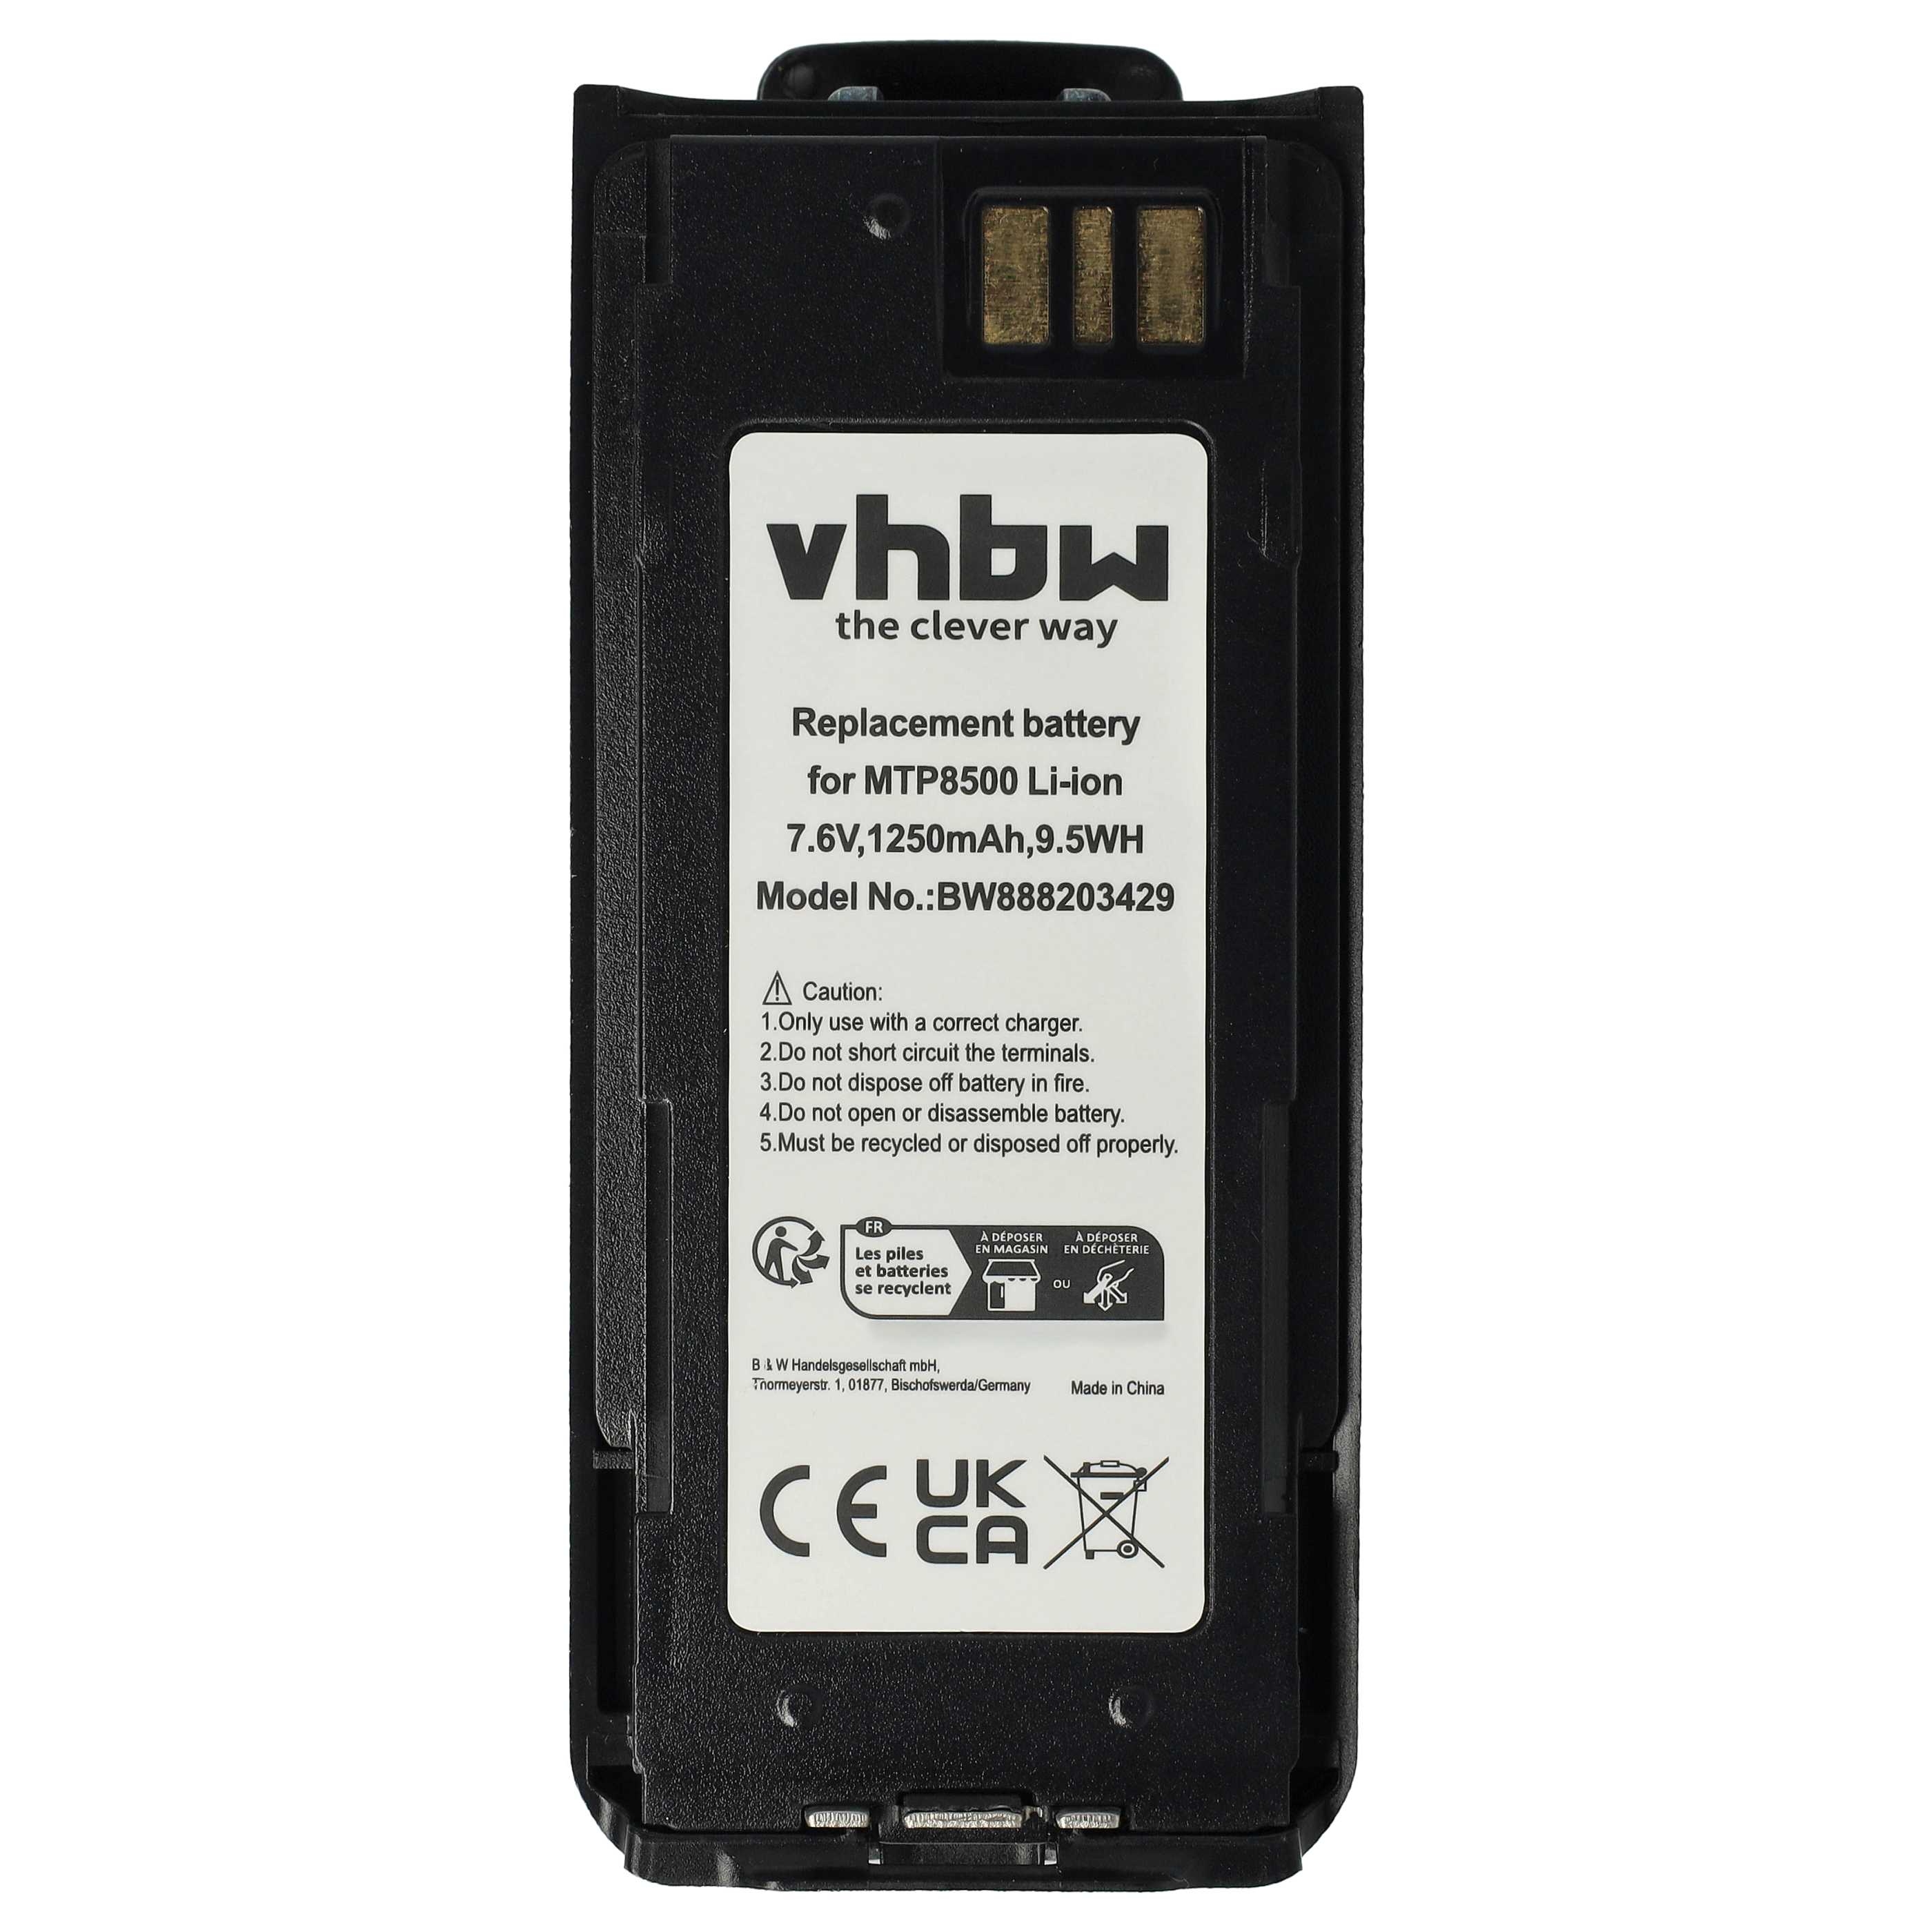 Batterie remplace Motorola NNTN8570B, NNTN8570A, NNTN8570 pour radio talkie-walkie - 1250mAh 7,6V Li-ion